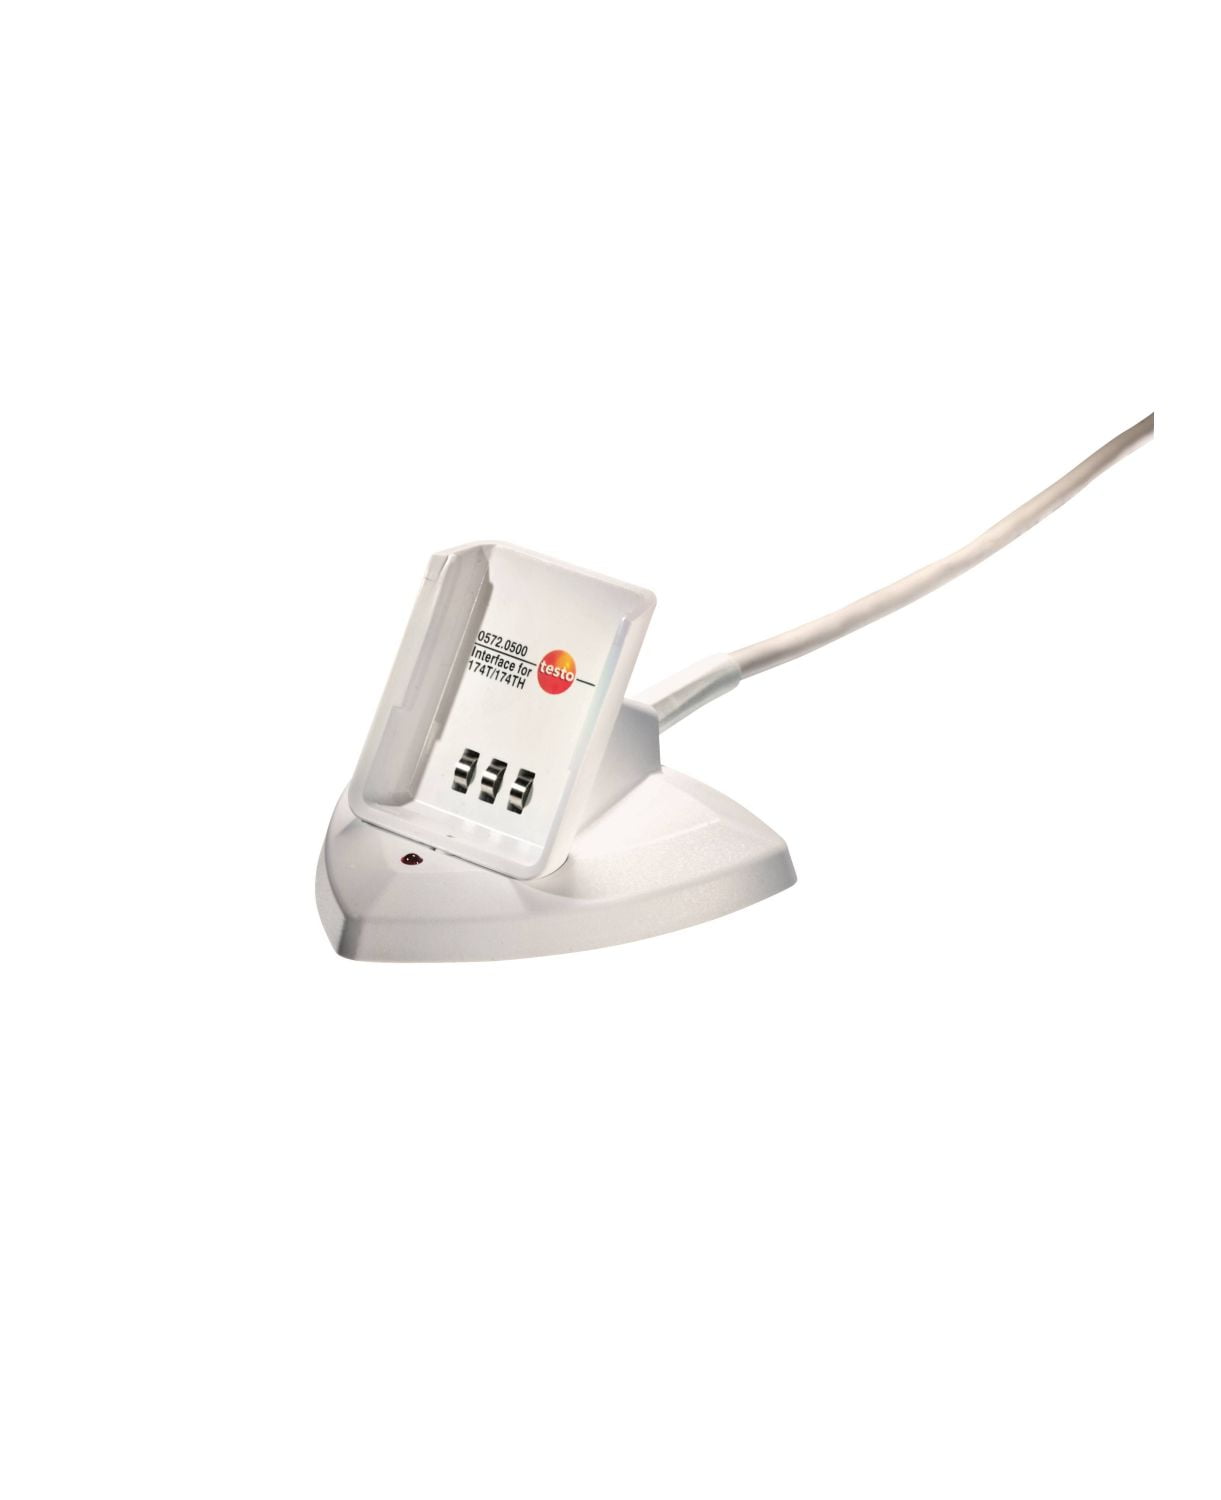 TESTO - Interface de comunicação USB para TESTO 174T e 174H